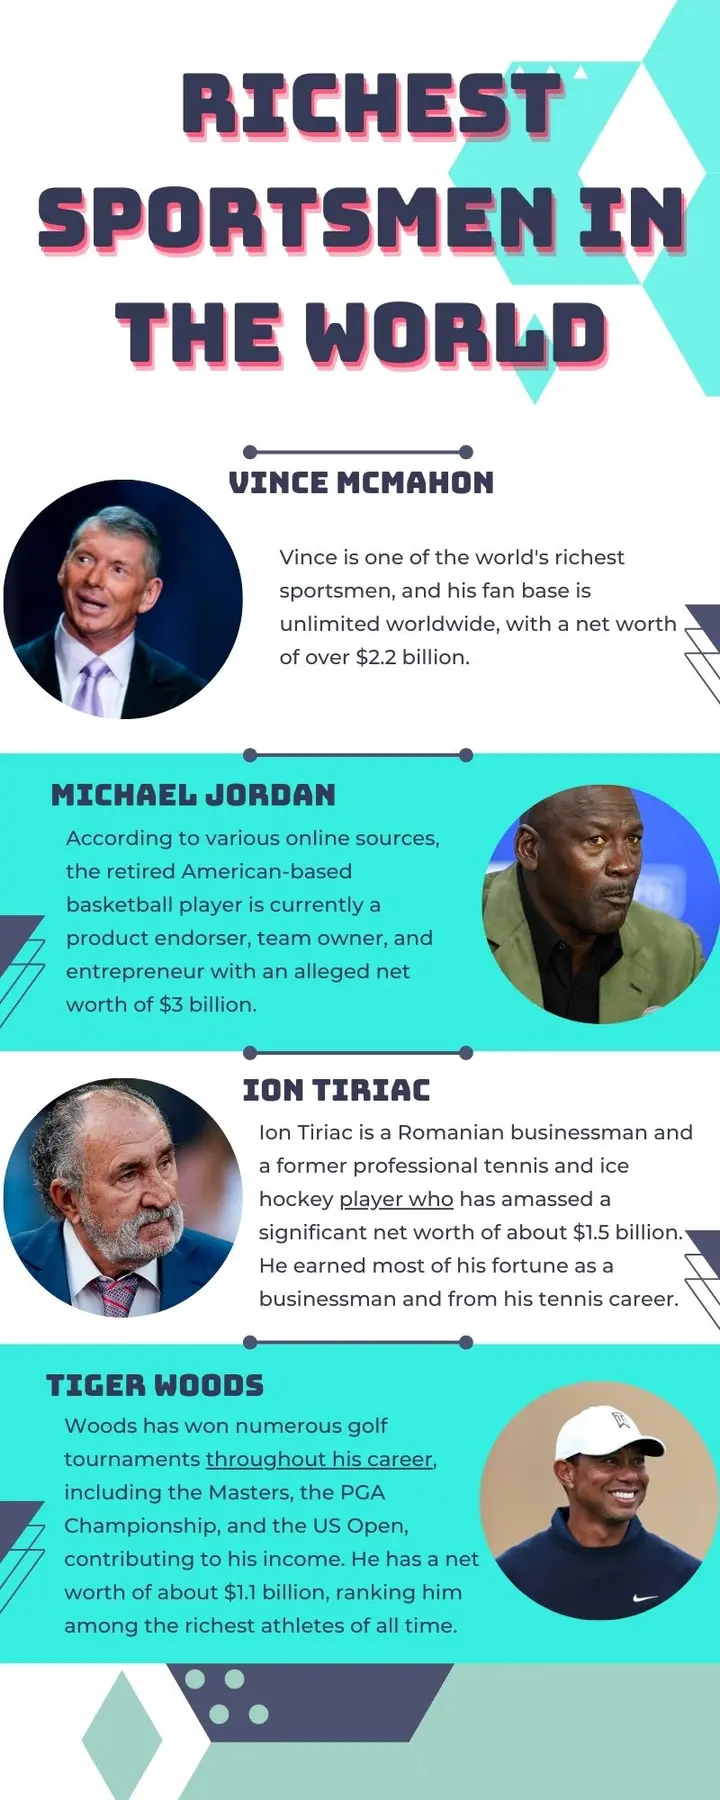 Richest sportsmen in the world